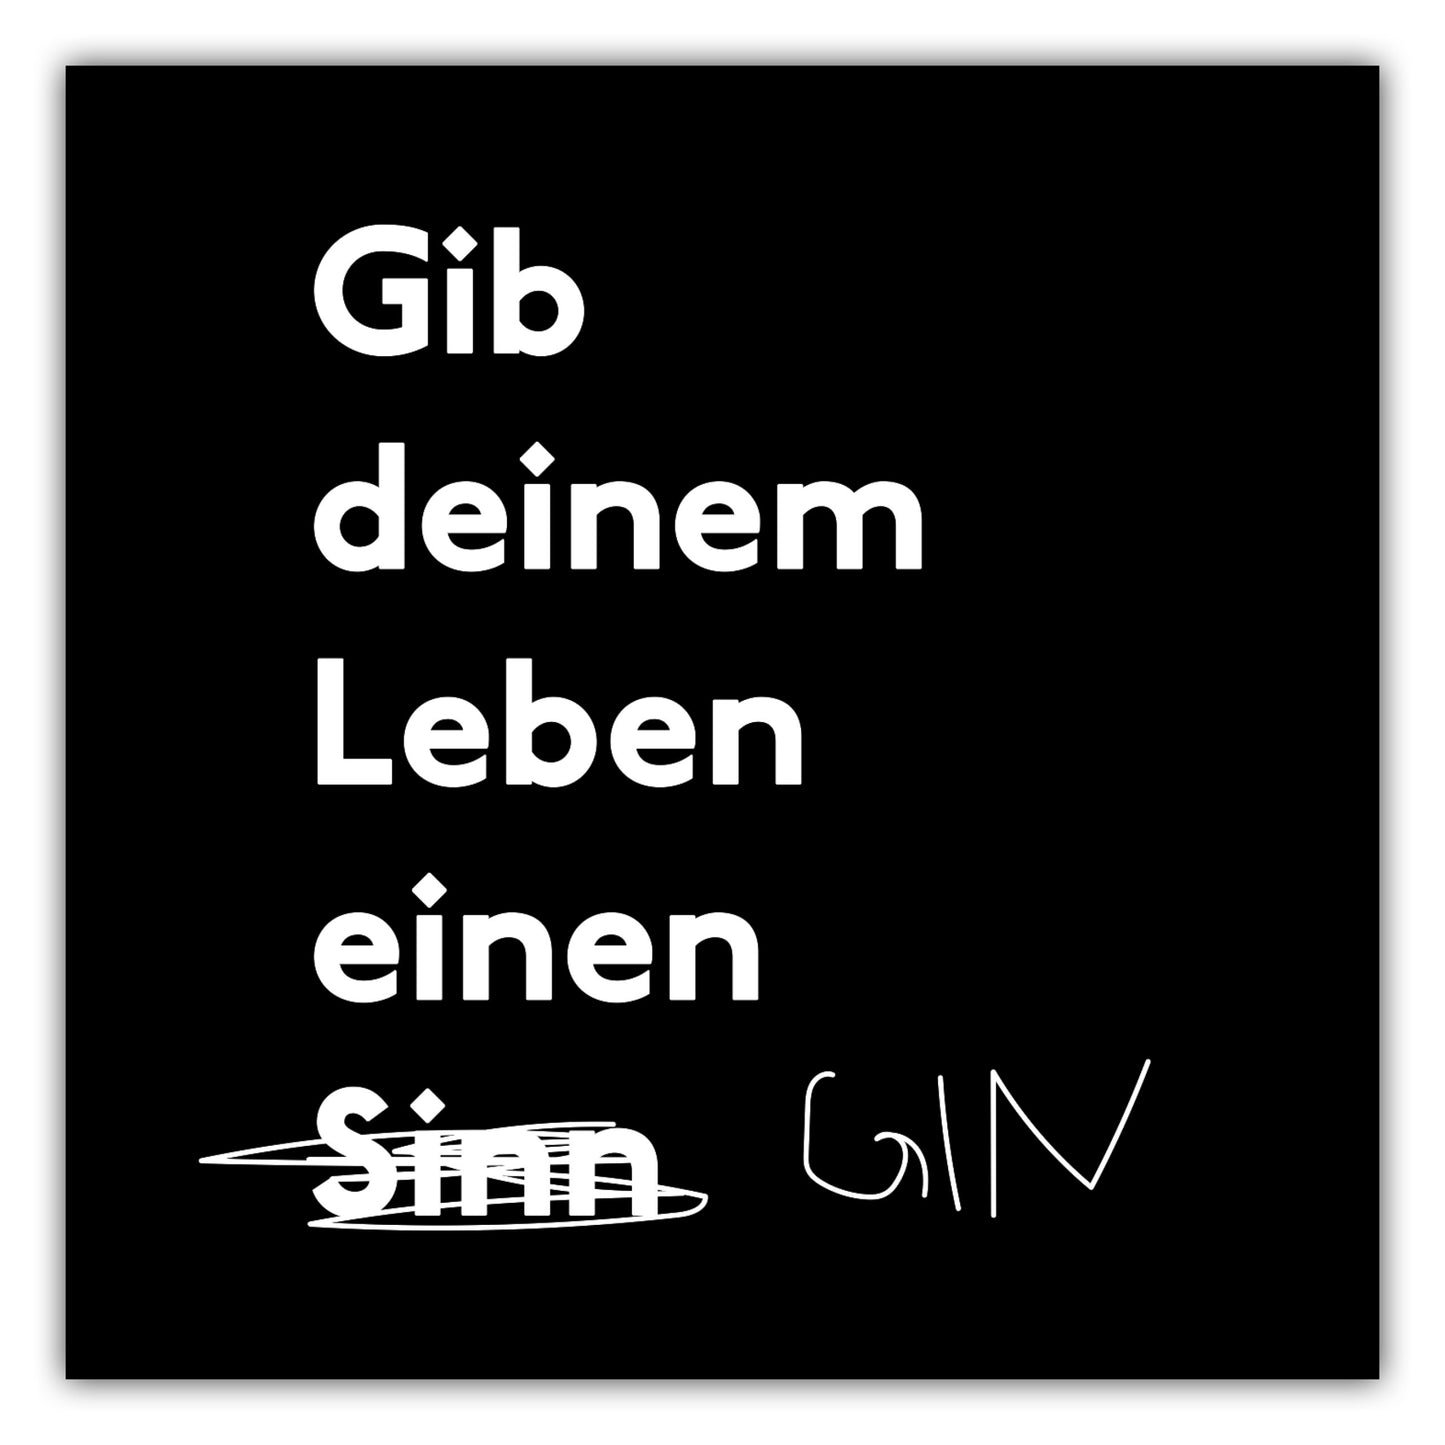 Poster Gib Deinem Leben einen Gin